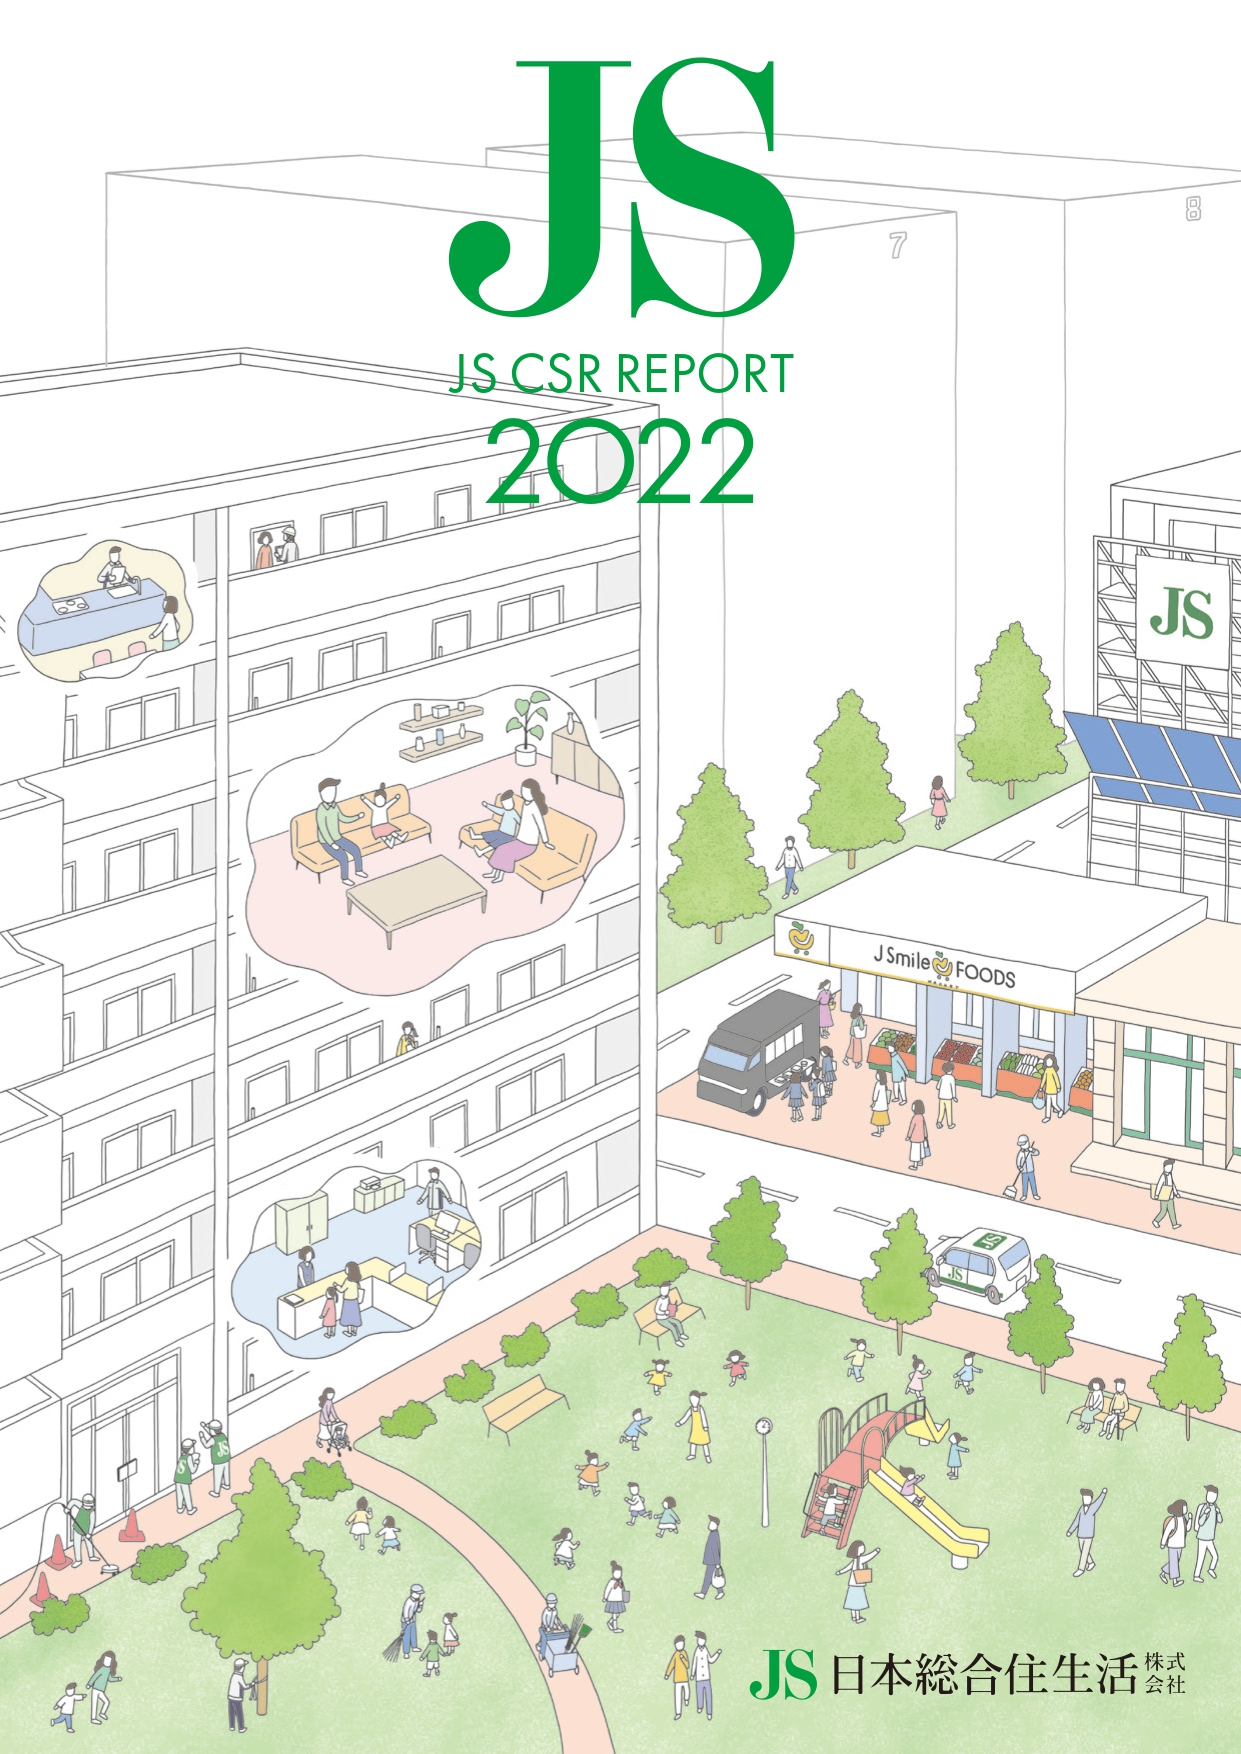 【お知らせ】「JS CSR REPORT 2022」を発行しました